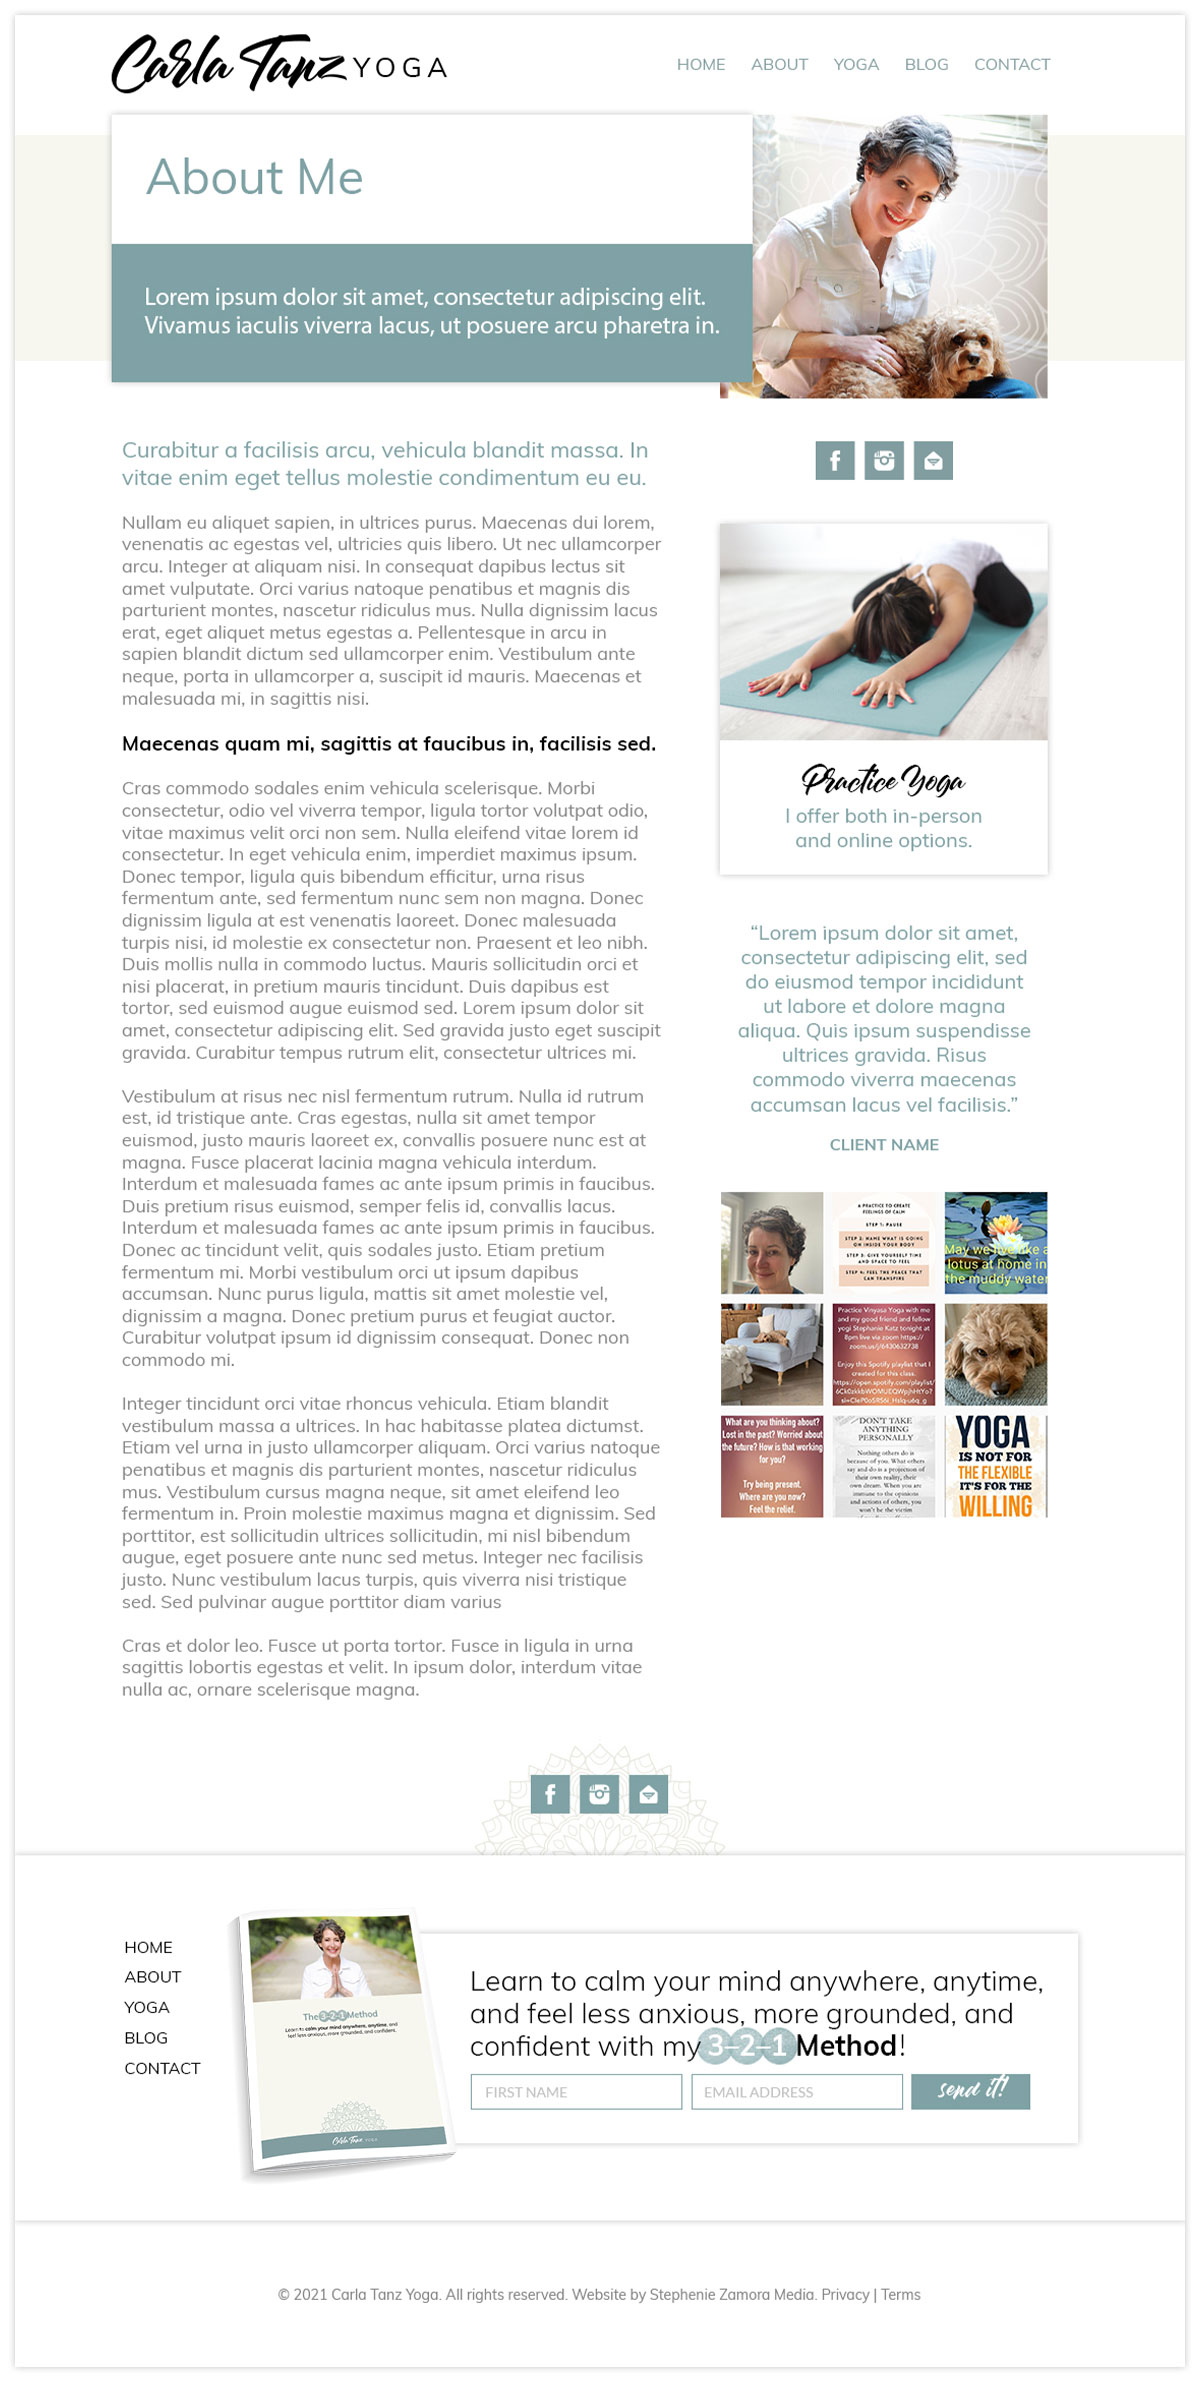 Website Design for Yoga Teacher